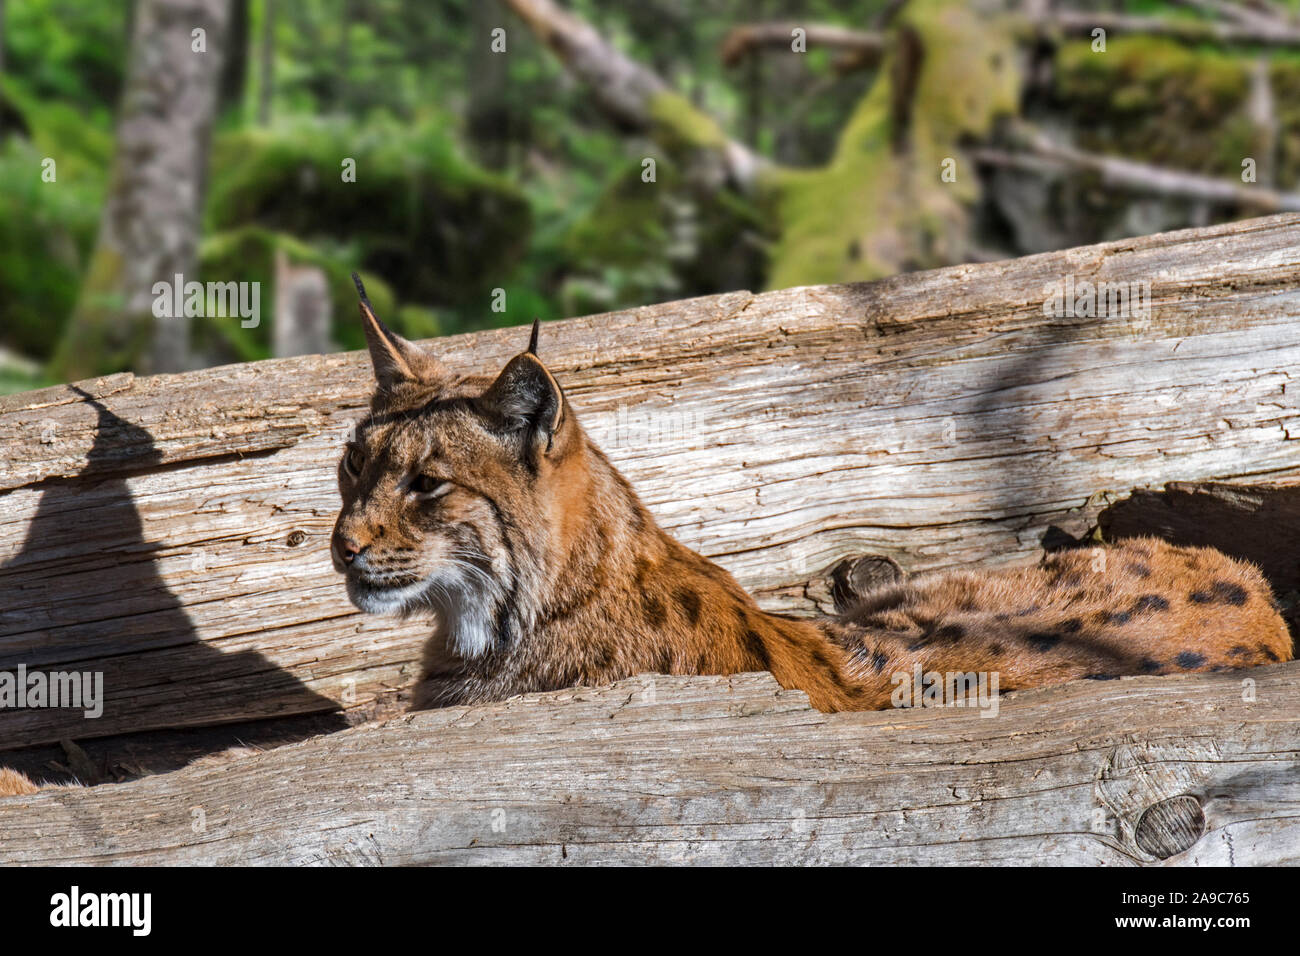 Eurasian lynx (Lynx lynx) resting in hollow fallen tree trunk in forest Stock Photo